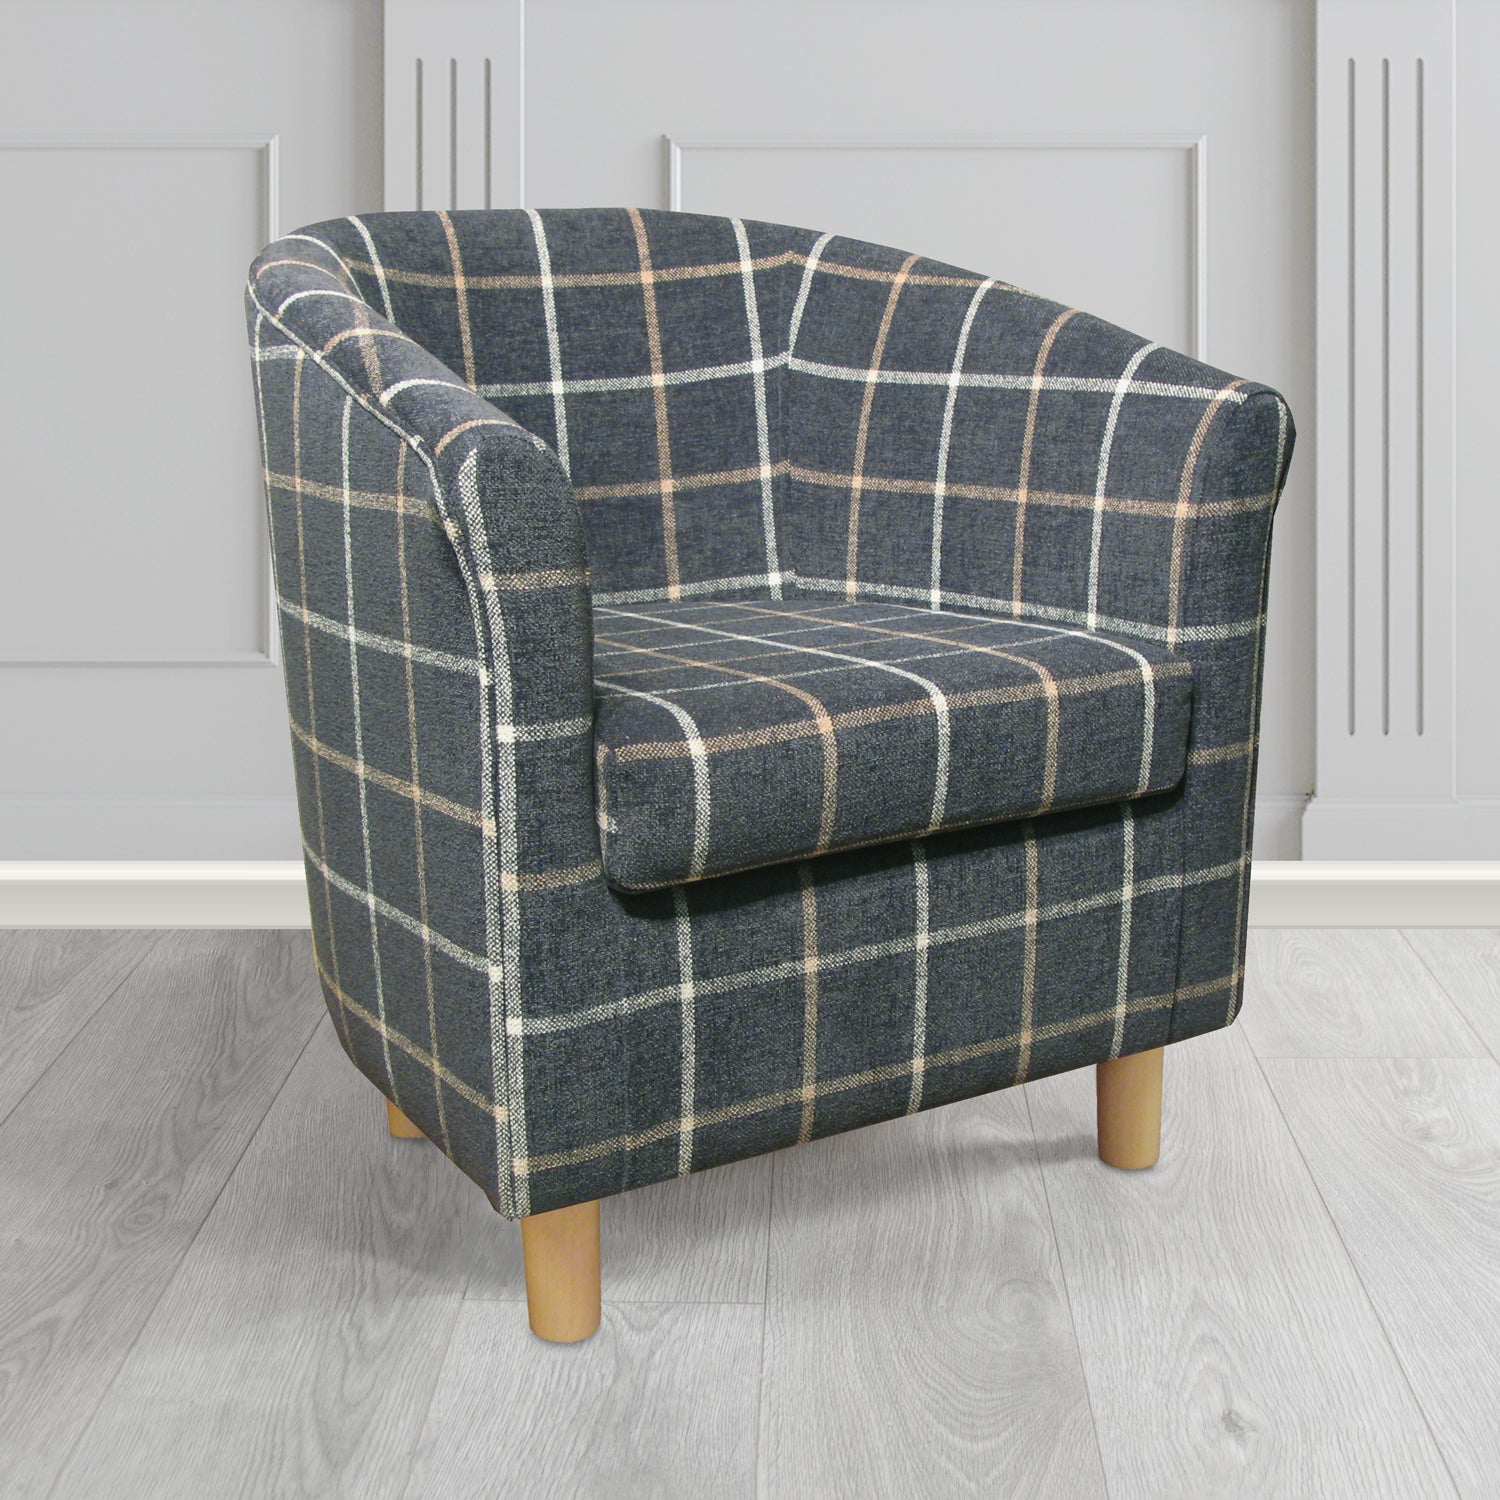 Tuscany Tub Chair in Lana Granite Check Tartan LAN1265 Crib 5 Fabric